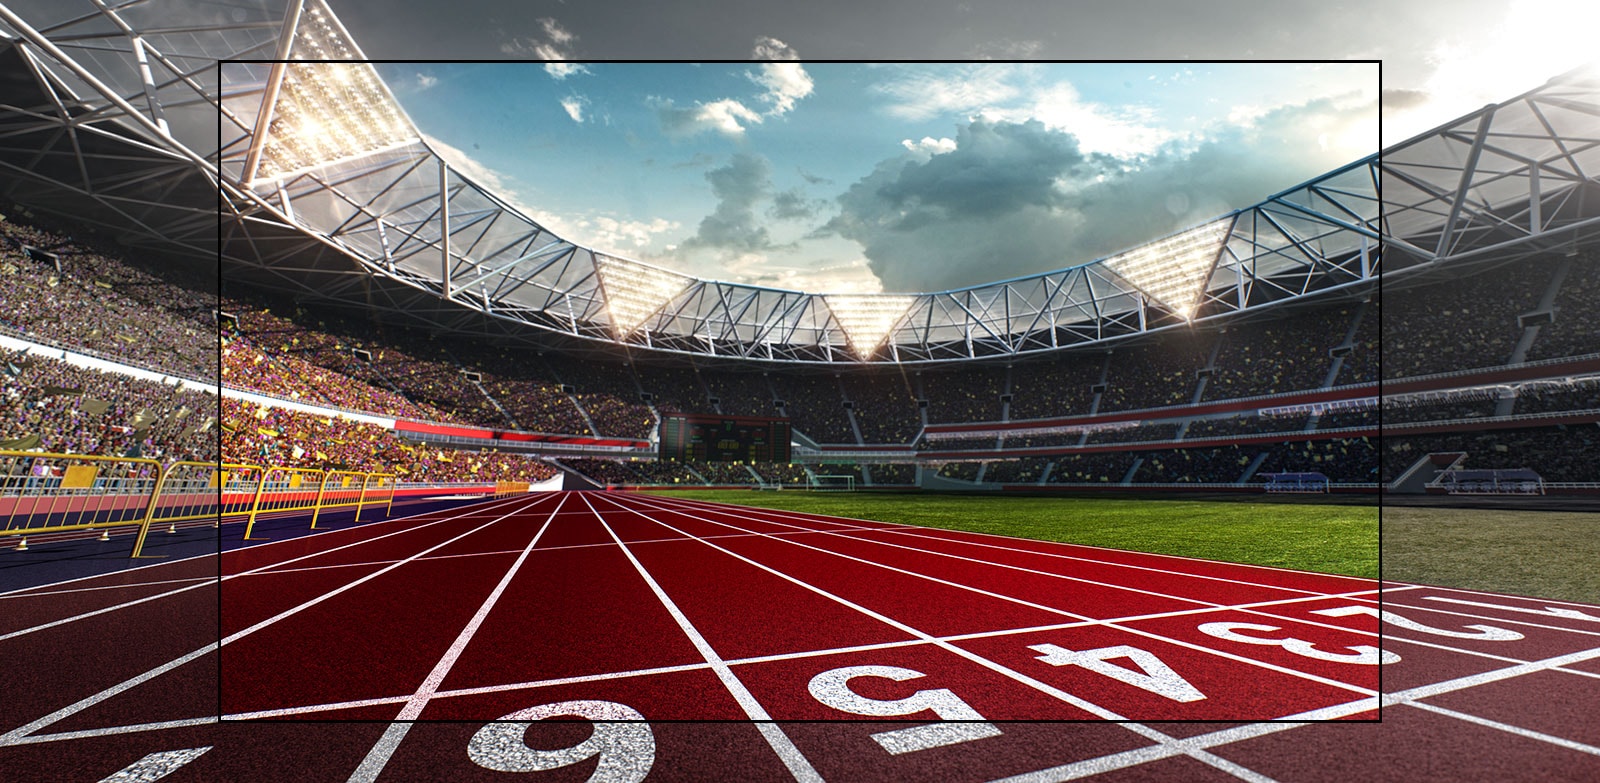 Uno schermo televisivo raffigurante uno stadio con un primo piano di una pista da corsa.  Lo stadio è pieno di spettatori.